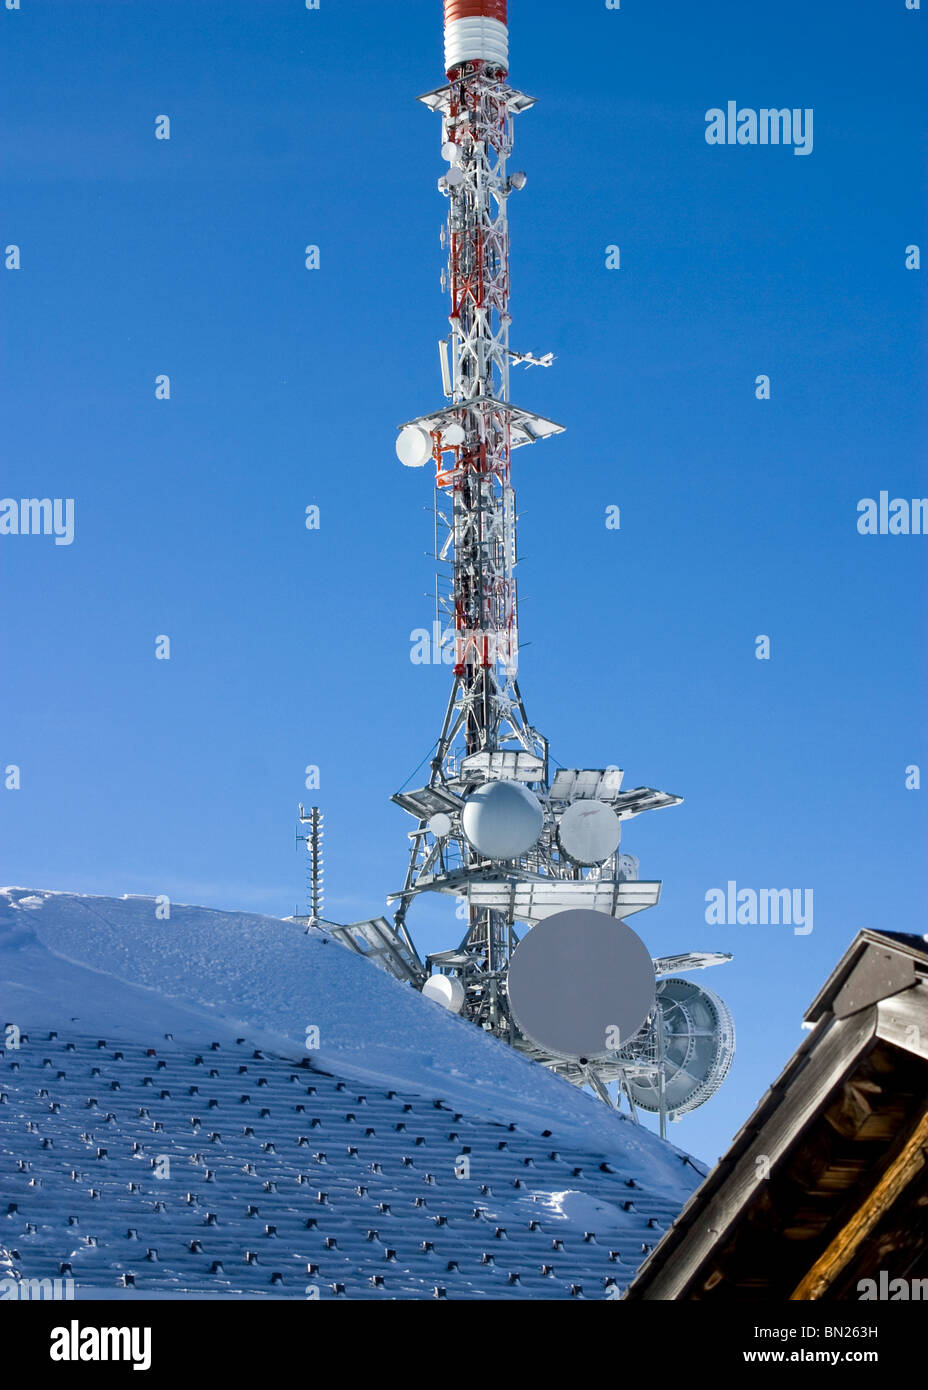 Übertragung von Mast auf Berg am Niederhorn im Berner Oberland Schweiz  Stockfotografie - Alamy